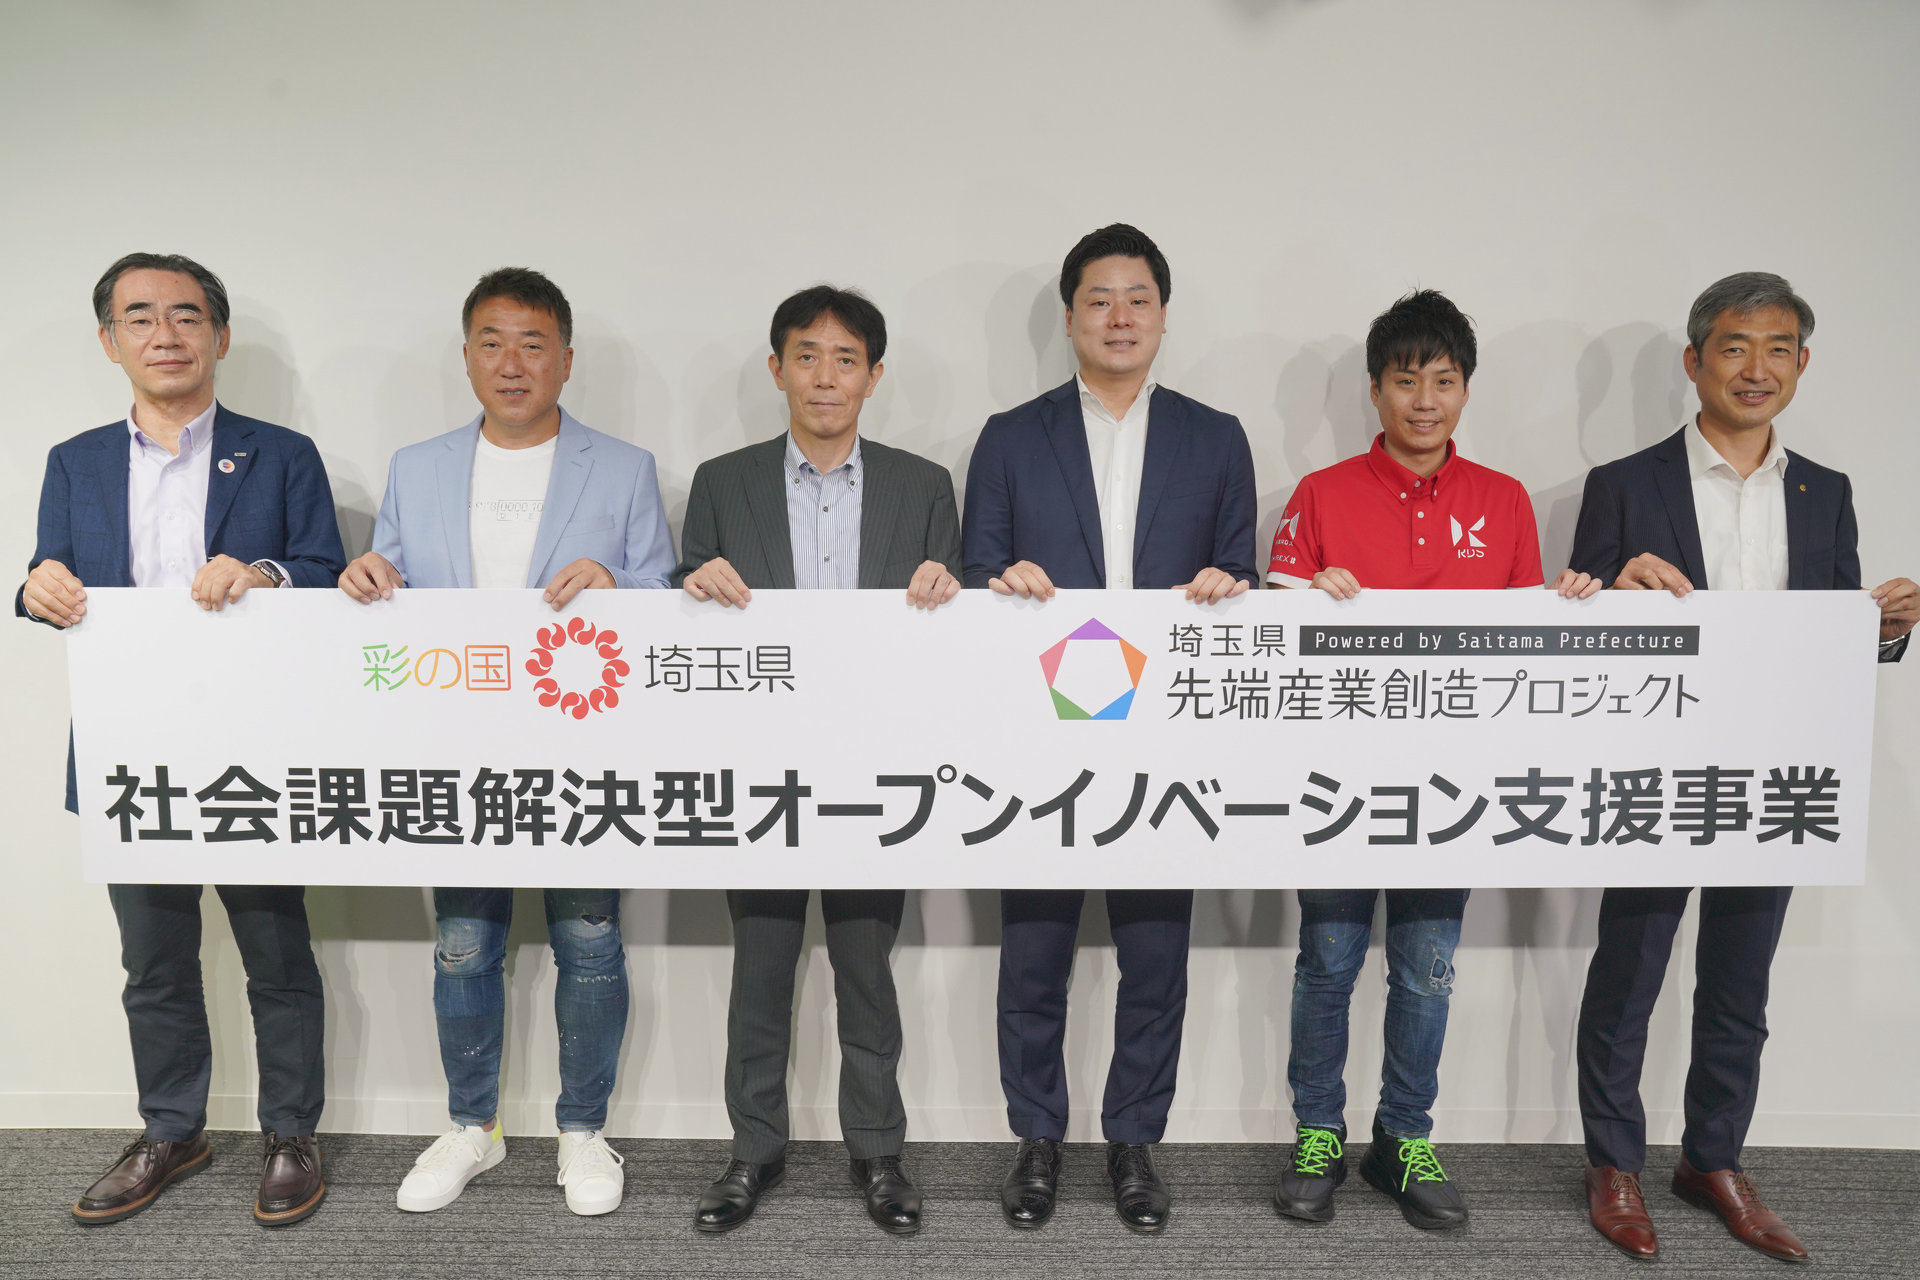 “日本の縮図”埼玉を舞台に社会課題解決型オープンイノベーションを促進